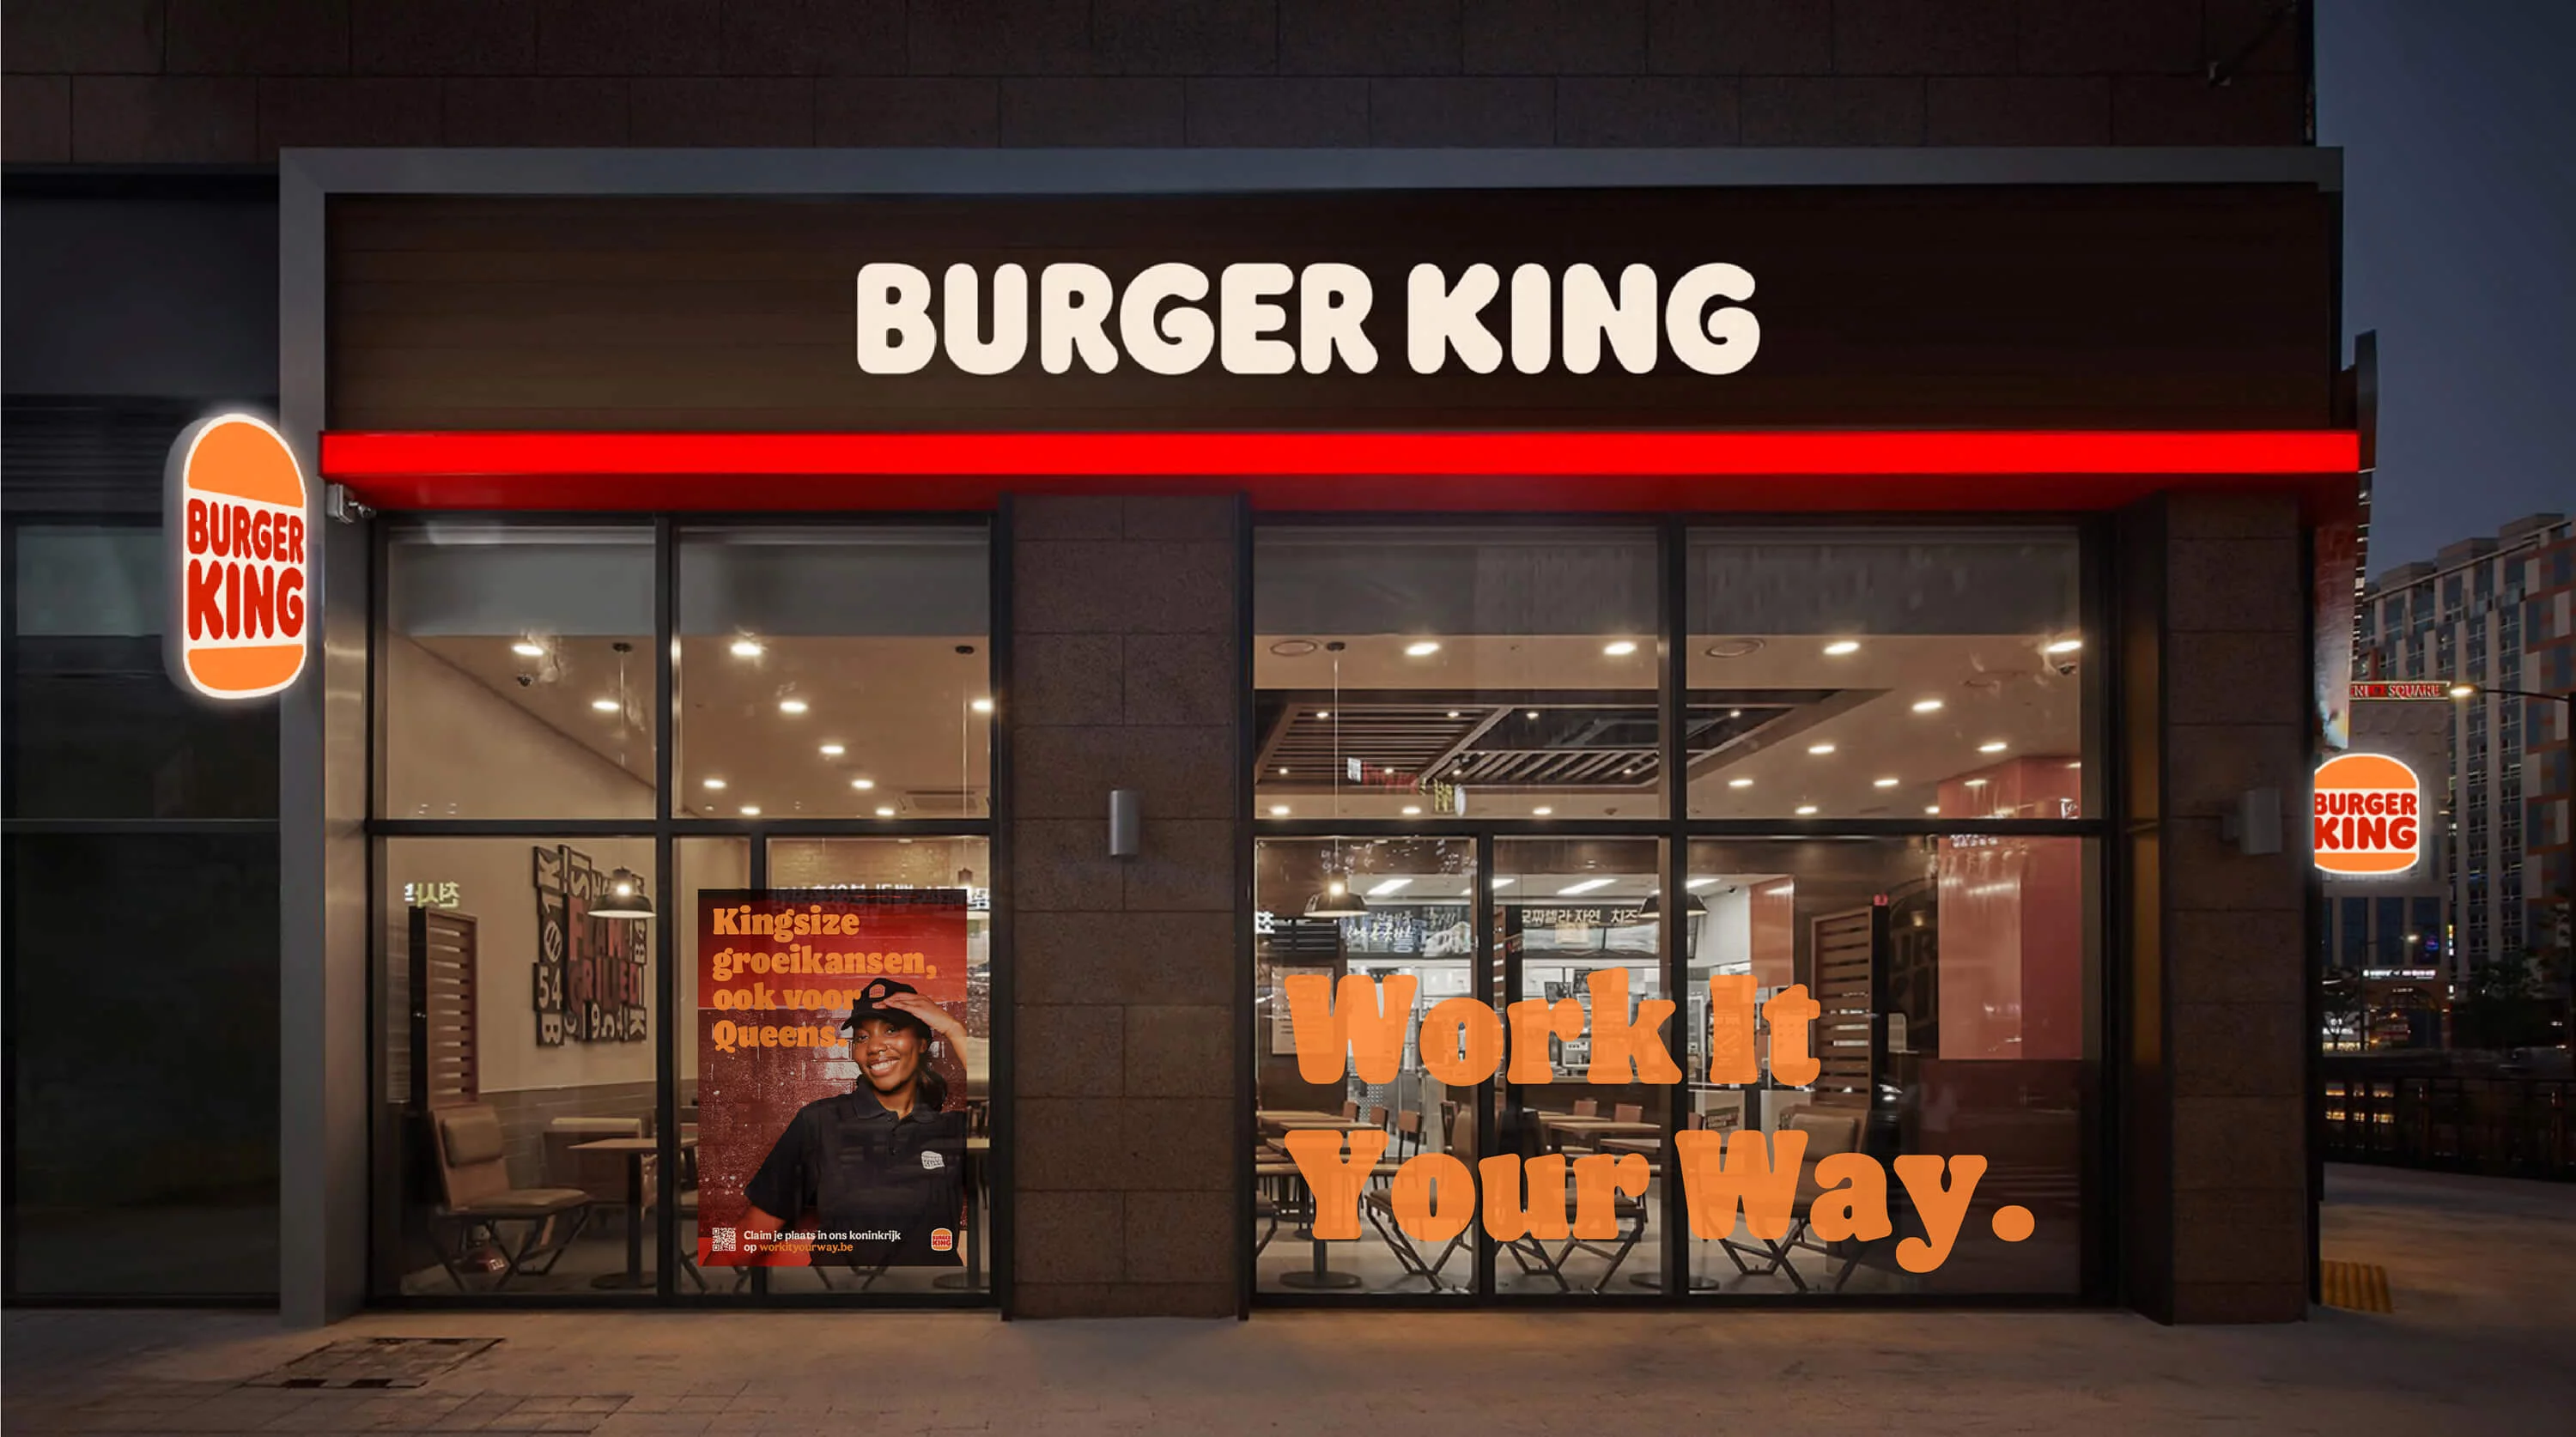 Filiaal van Burger King met employer brand slogans